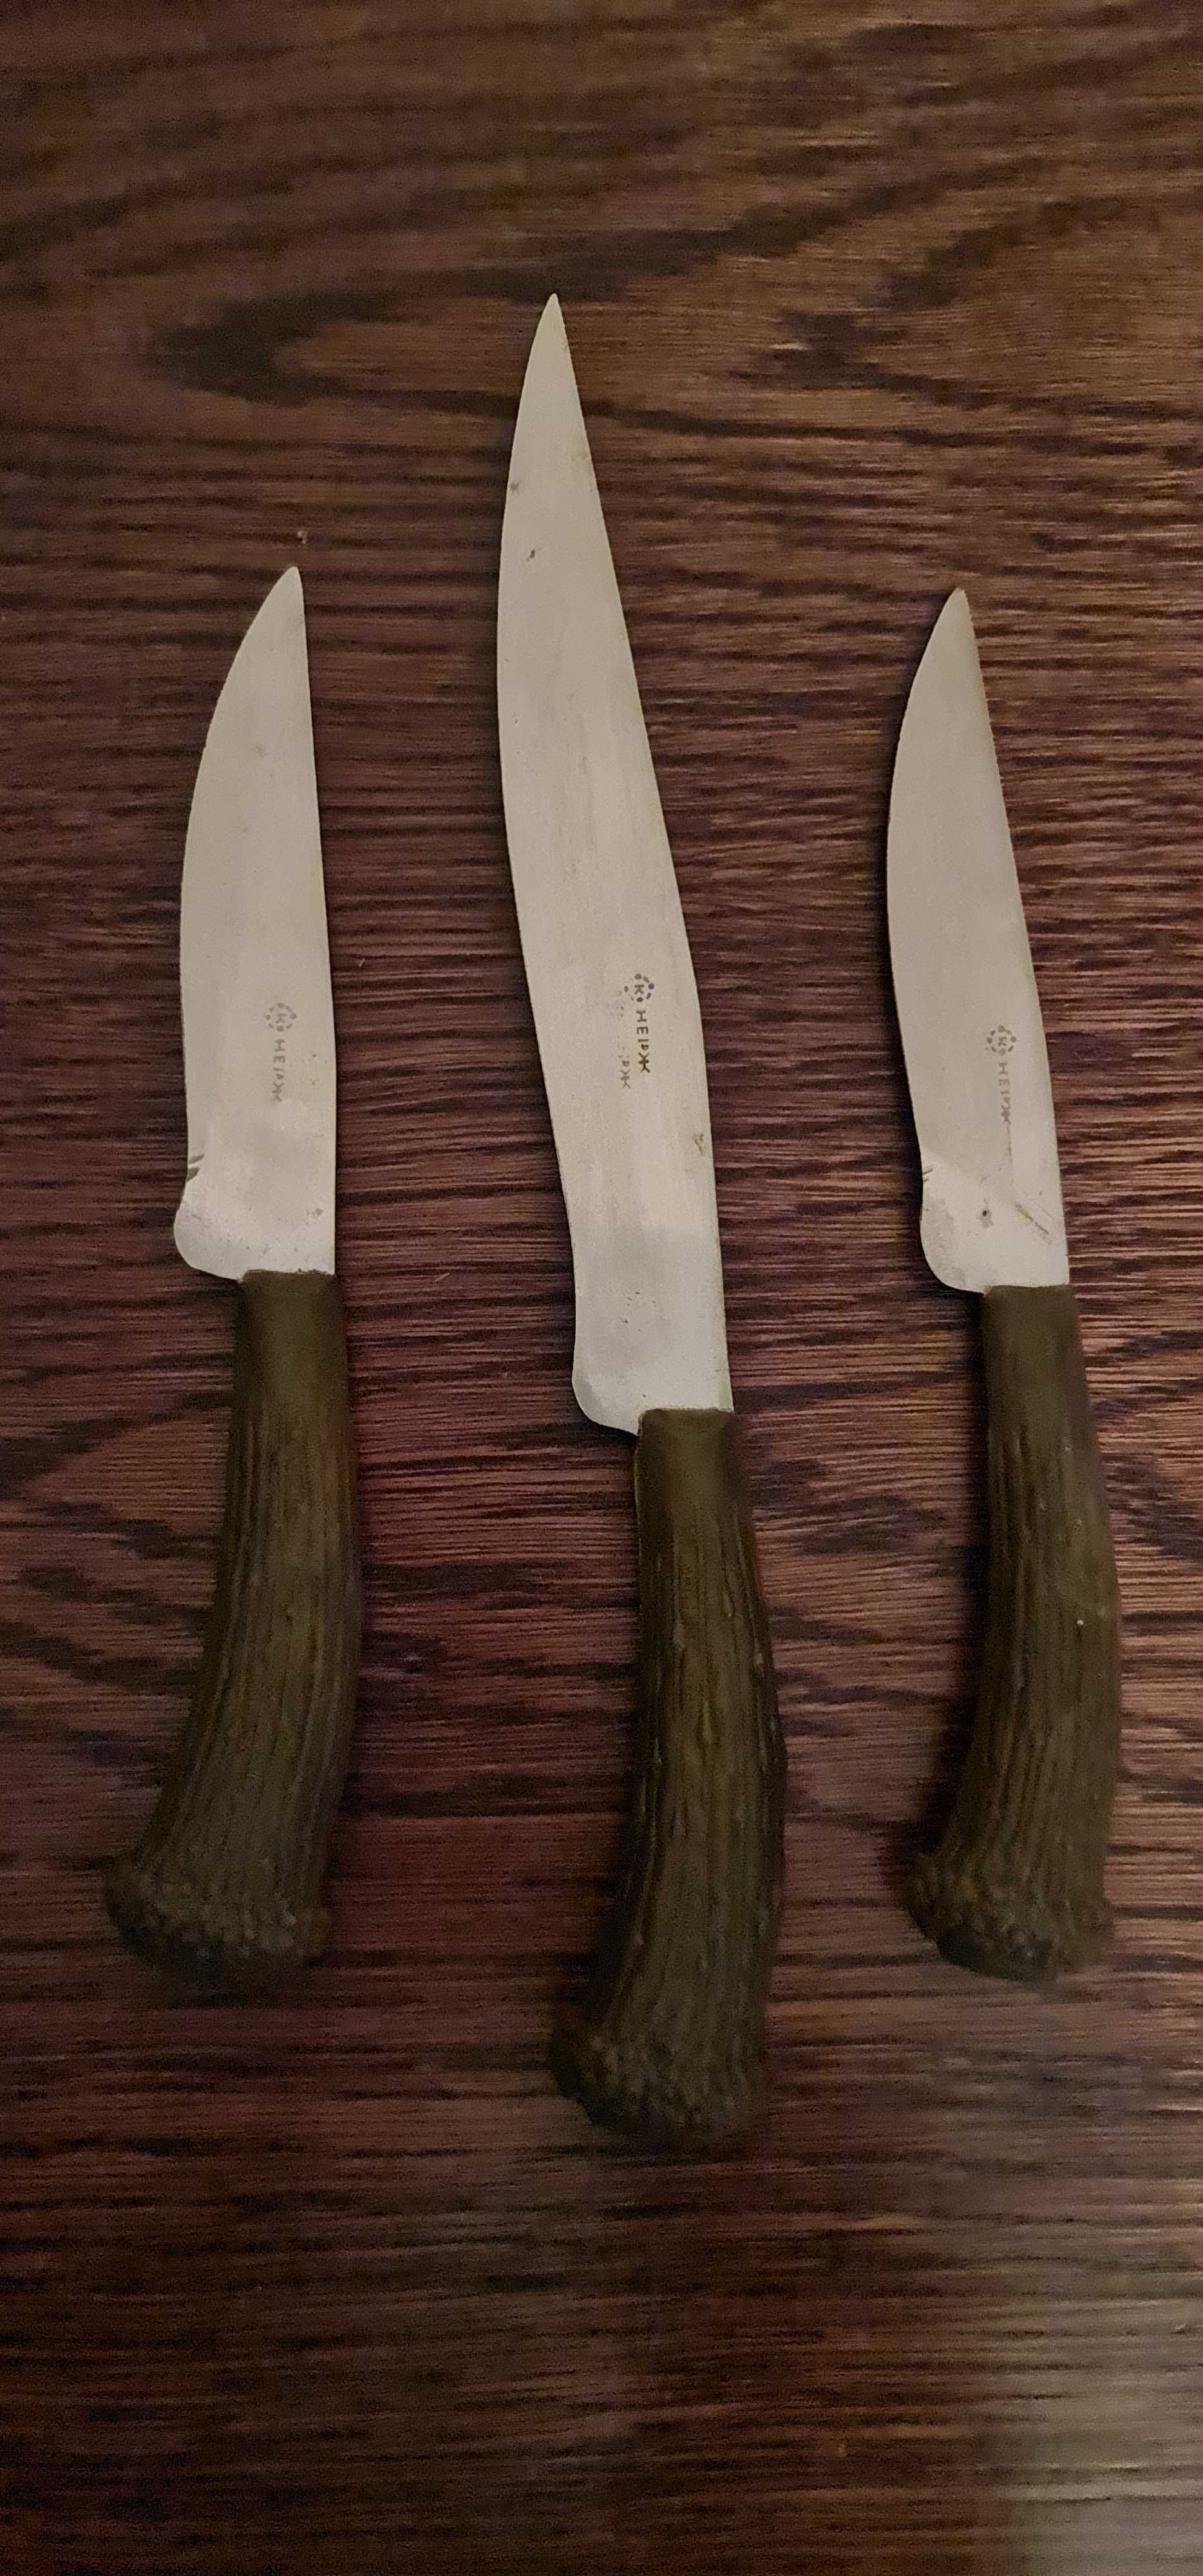 3 Noże kuchenne do powieszenia oraz użytku